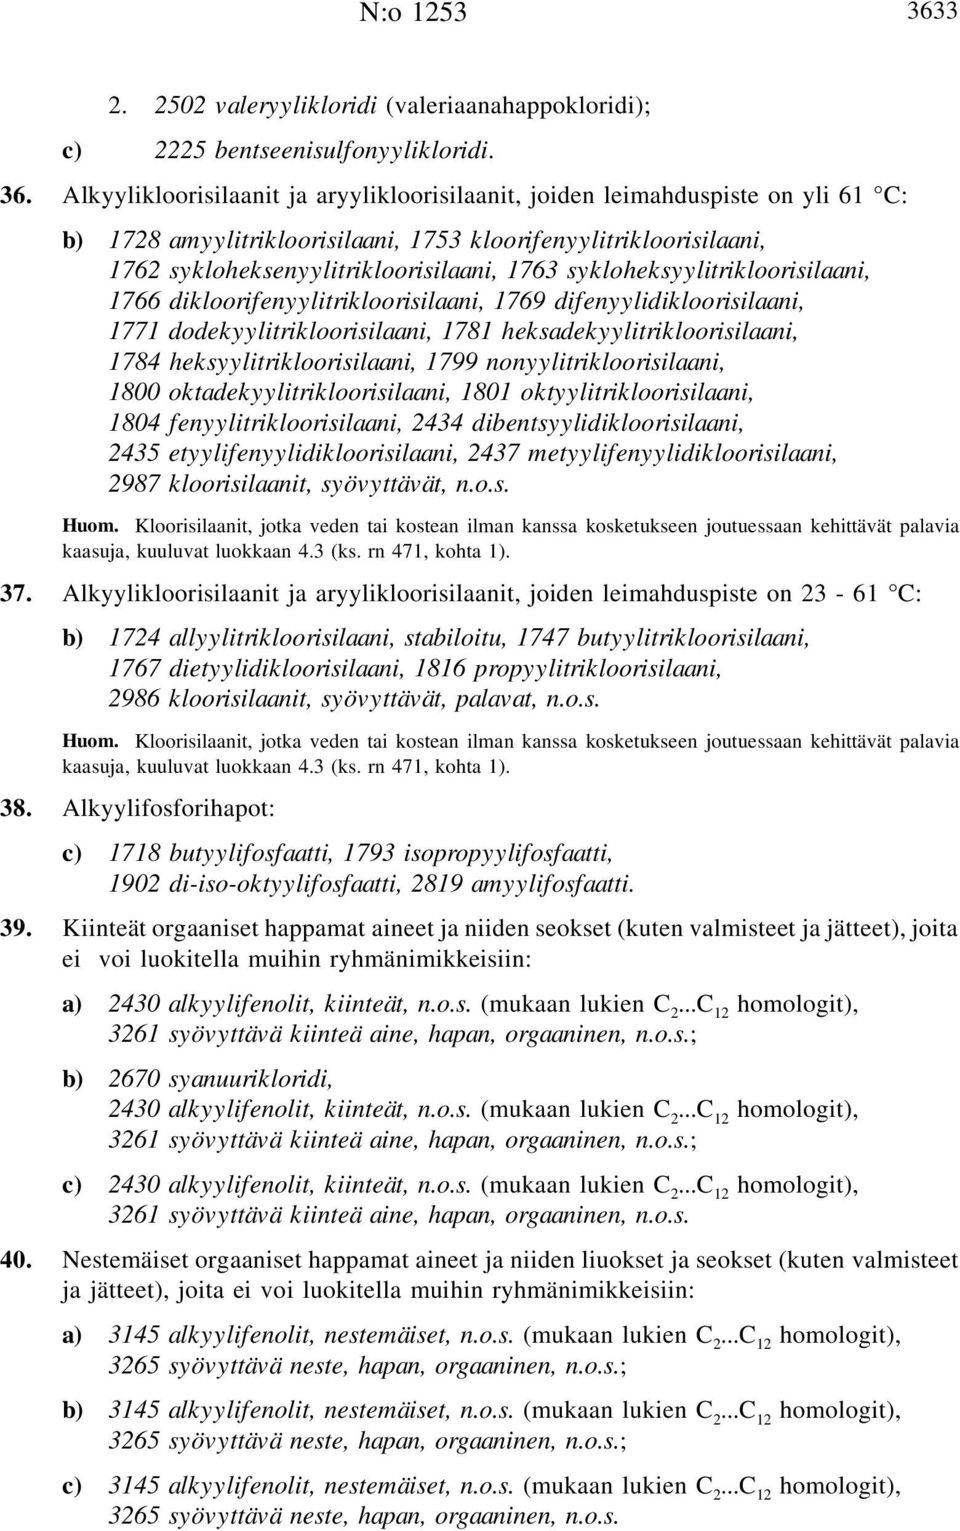 Alkyylikloorisilaanit ja aryylikloorisilaanit, joiden leimahduspiste on yli 61 C: b) 1728 amyylitrikloorisilaani, 1753 kloorifenyylitrikloorisilaani, 1762 sykloheksenyylitrikloorisilaani, 1763